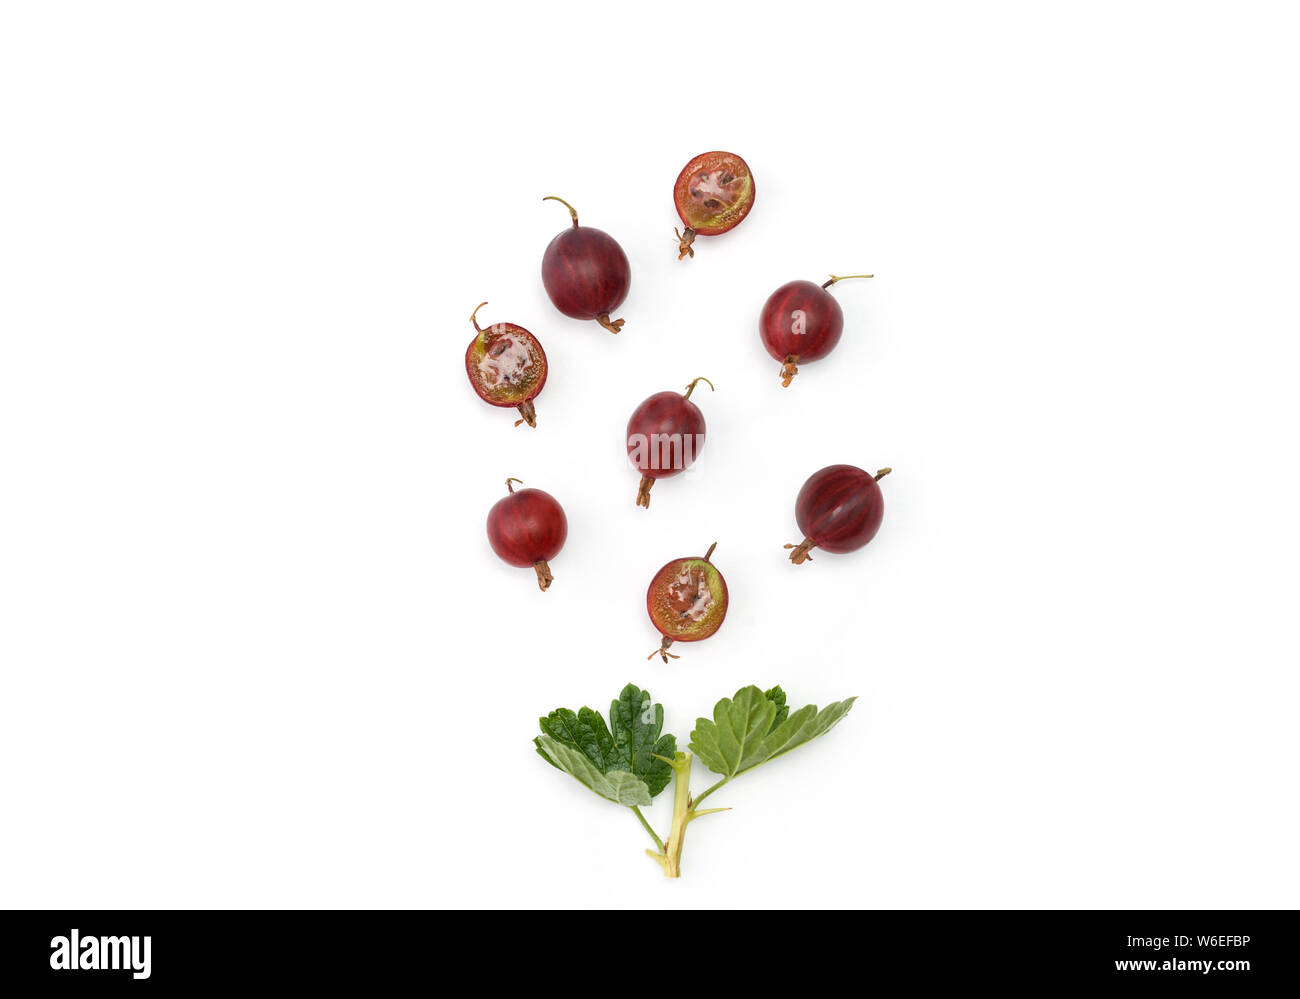 Groseilles rouges mûres organiques. Les moitiés de fruits entiers et d'un brin. Mise en page créative faite de groseilles isolé sur blanc. Mise à plat. Banque D'Images